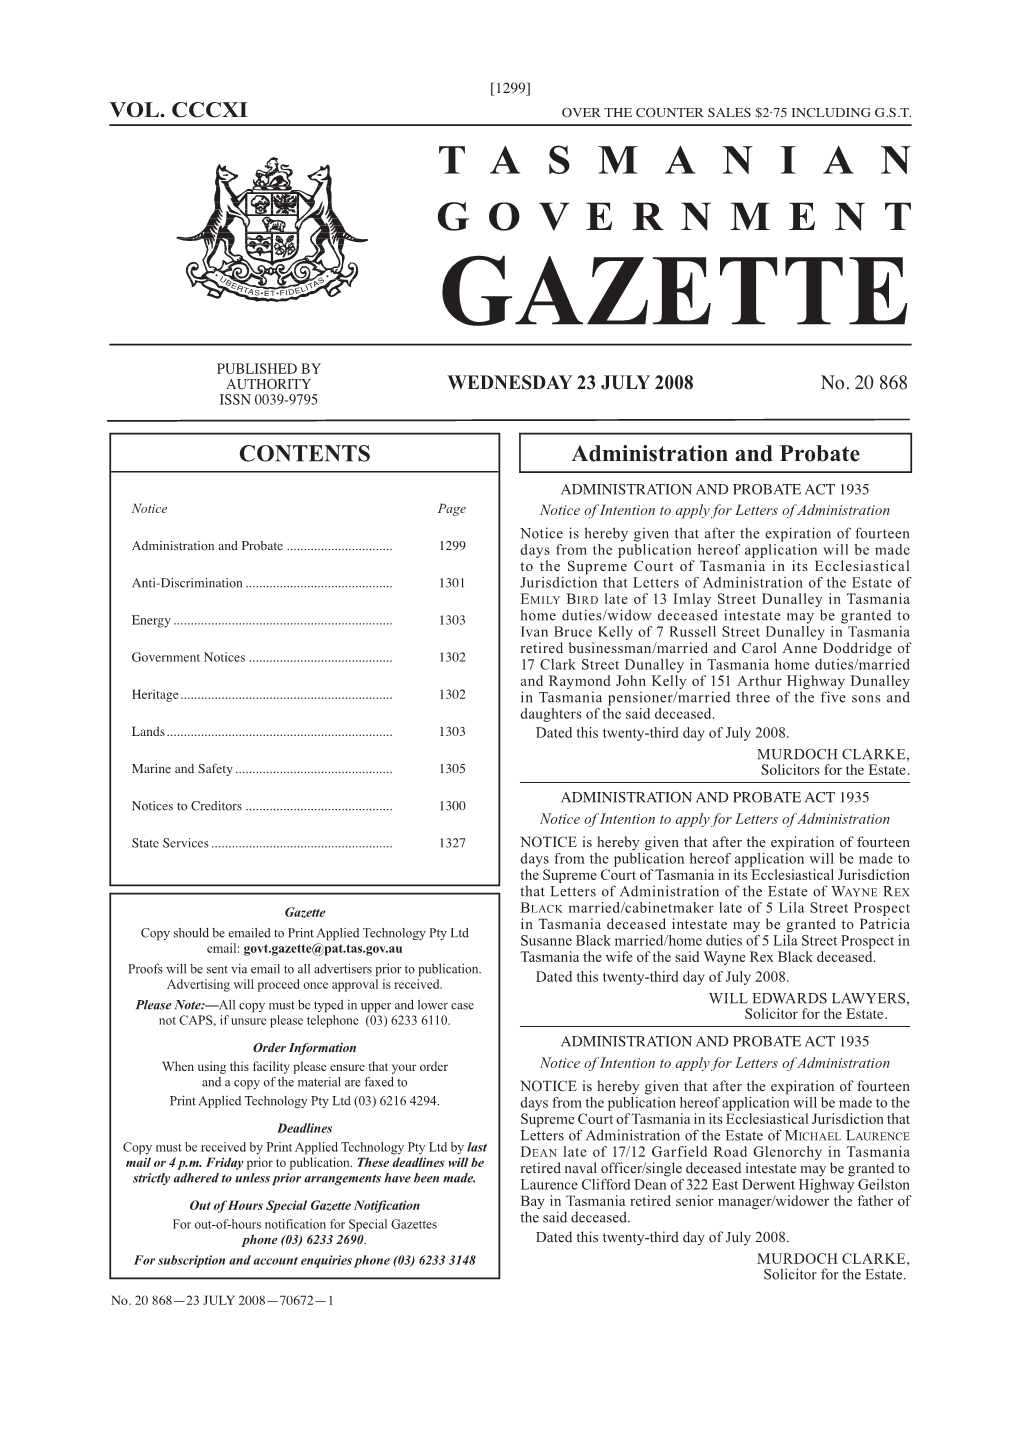 Gazette 20868